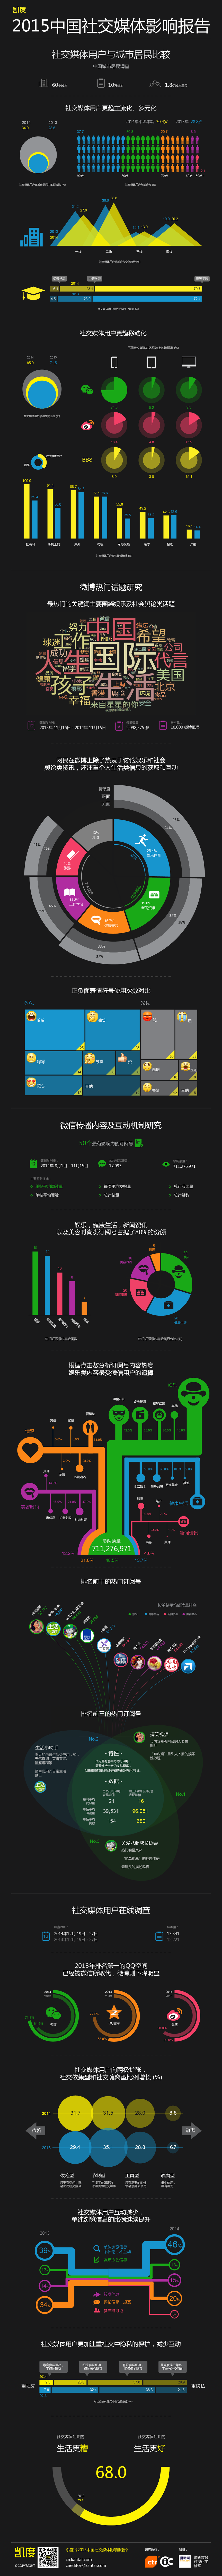 2015中国社交媒体影响报告